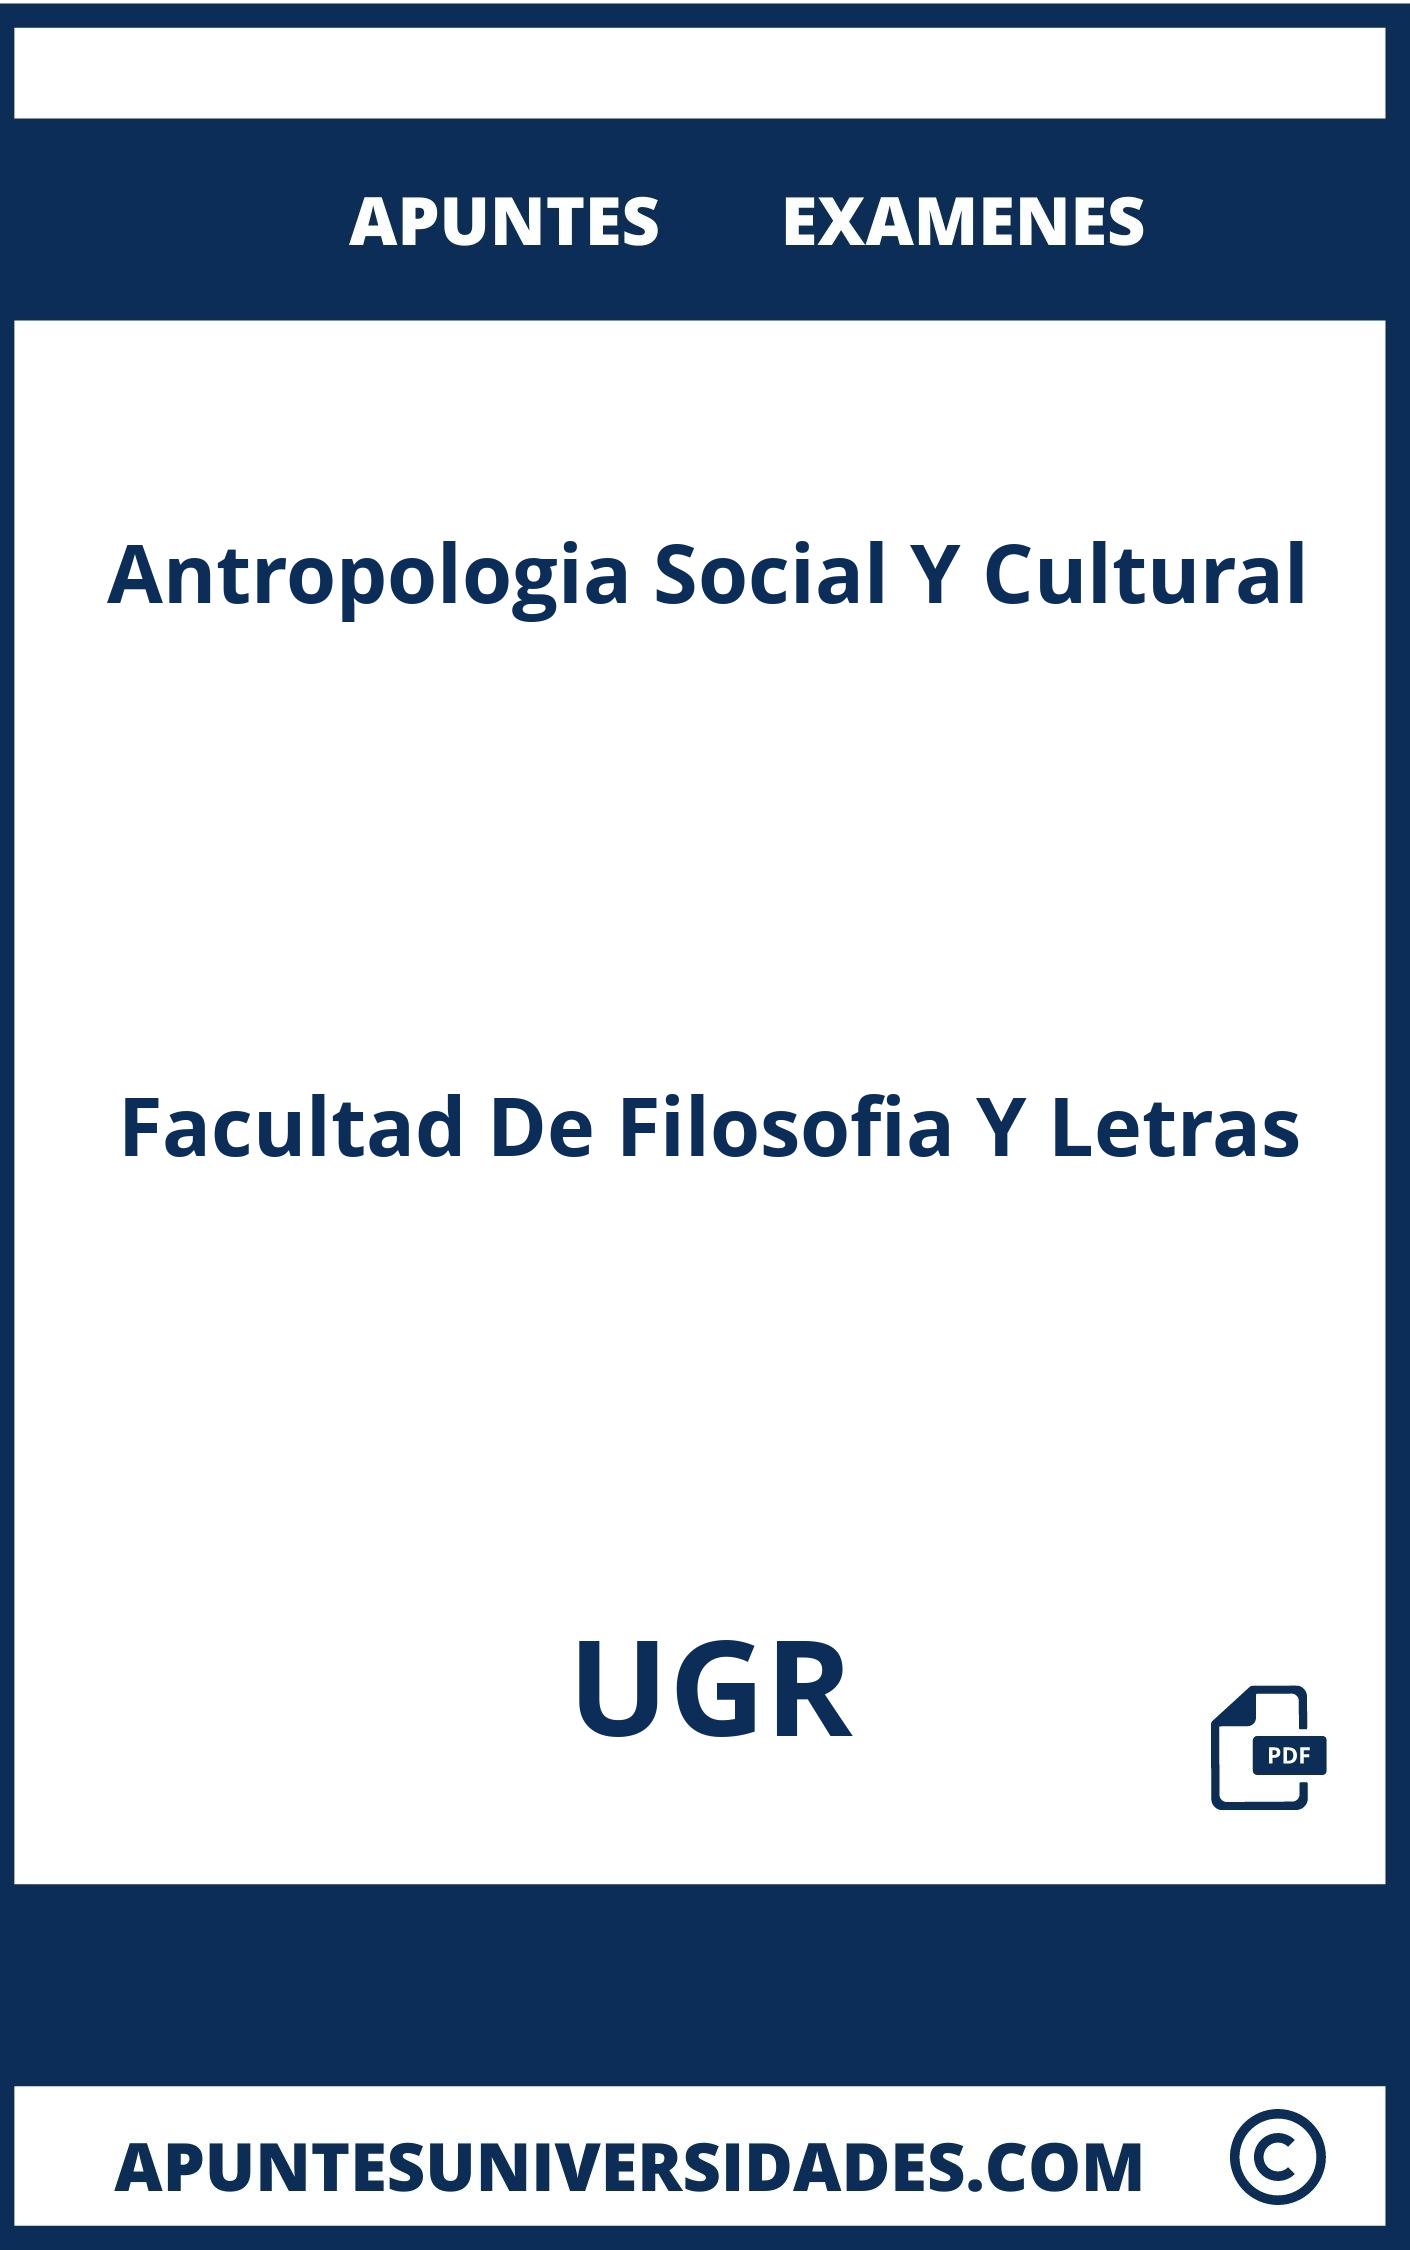 Apuntes y Examenes de Antropologia Social Y Cultural UGR